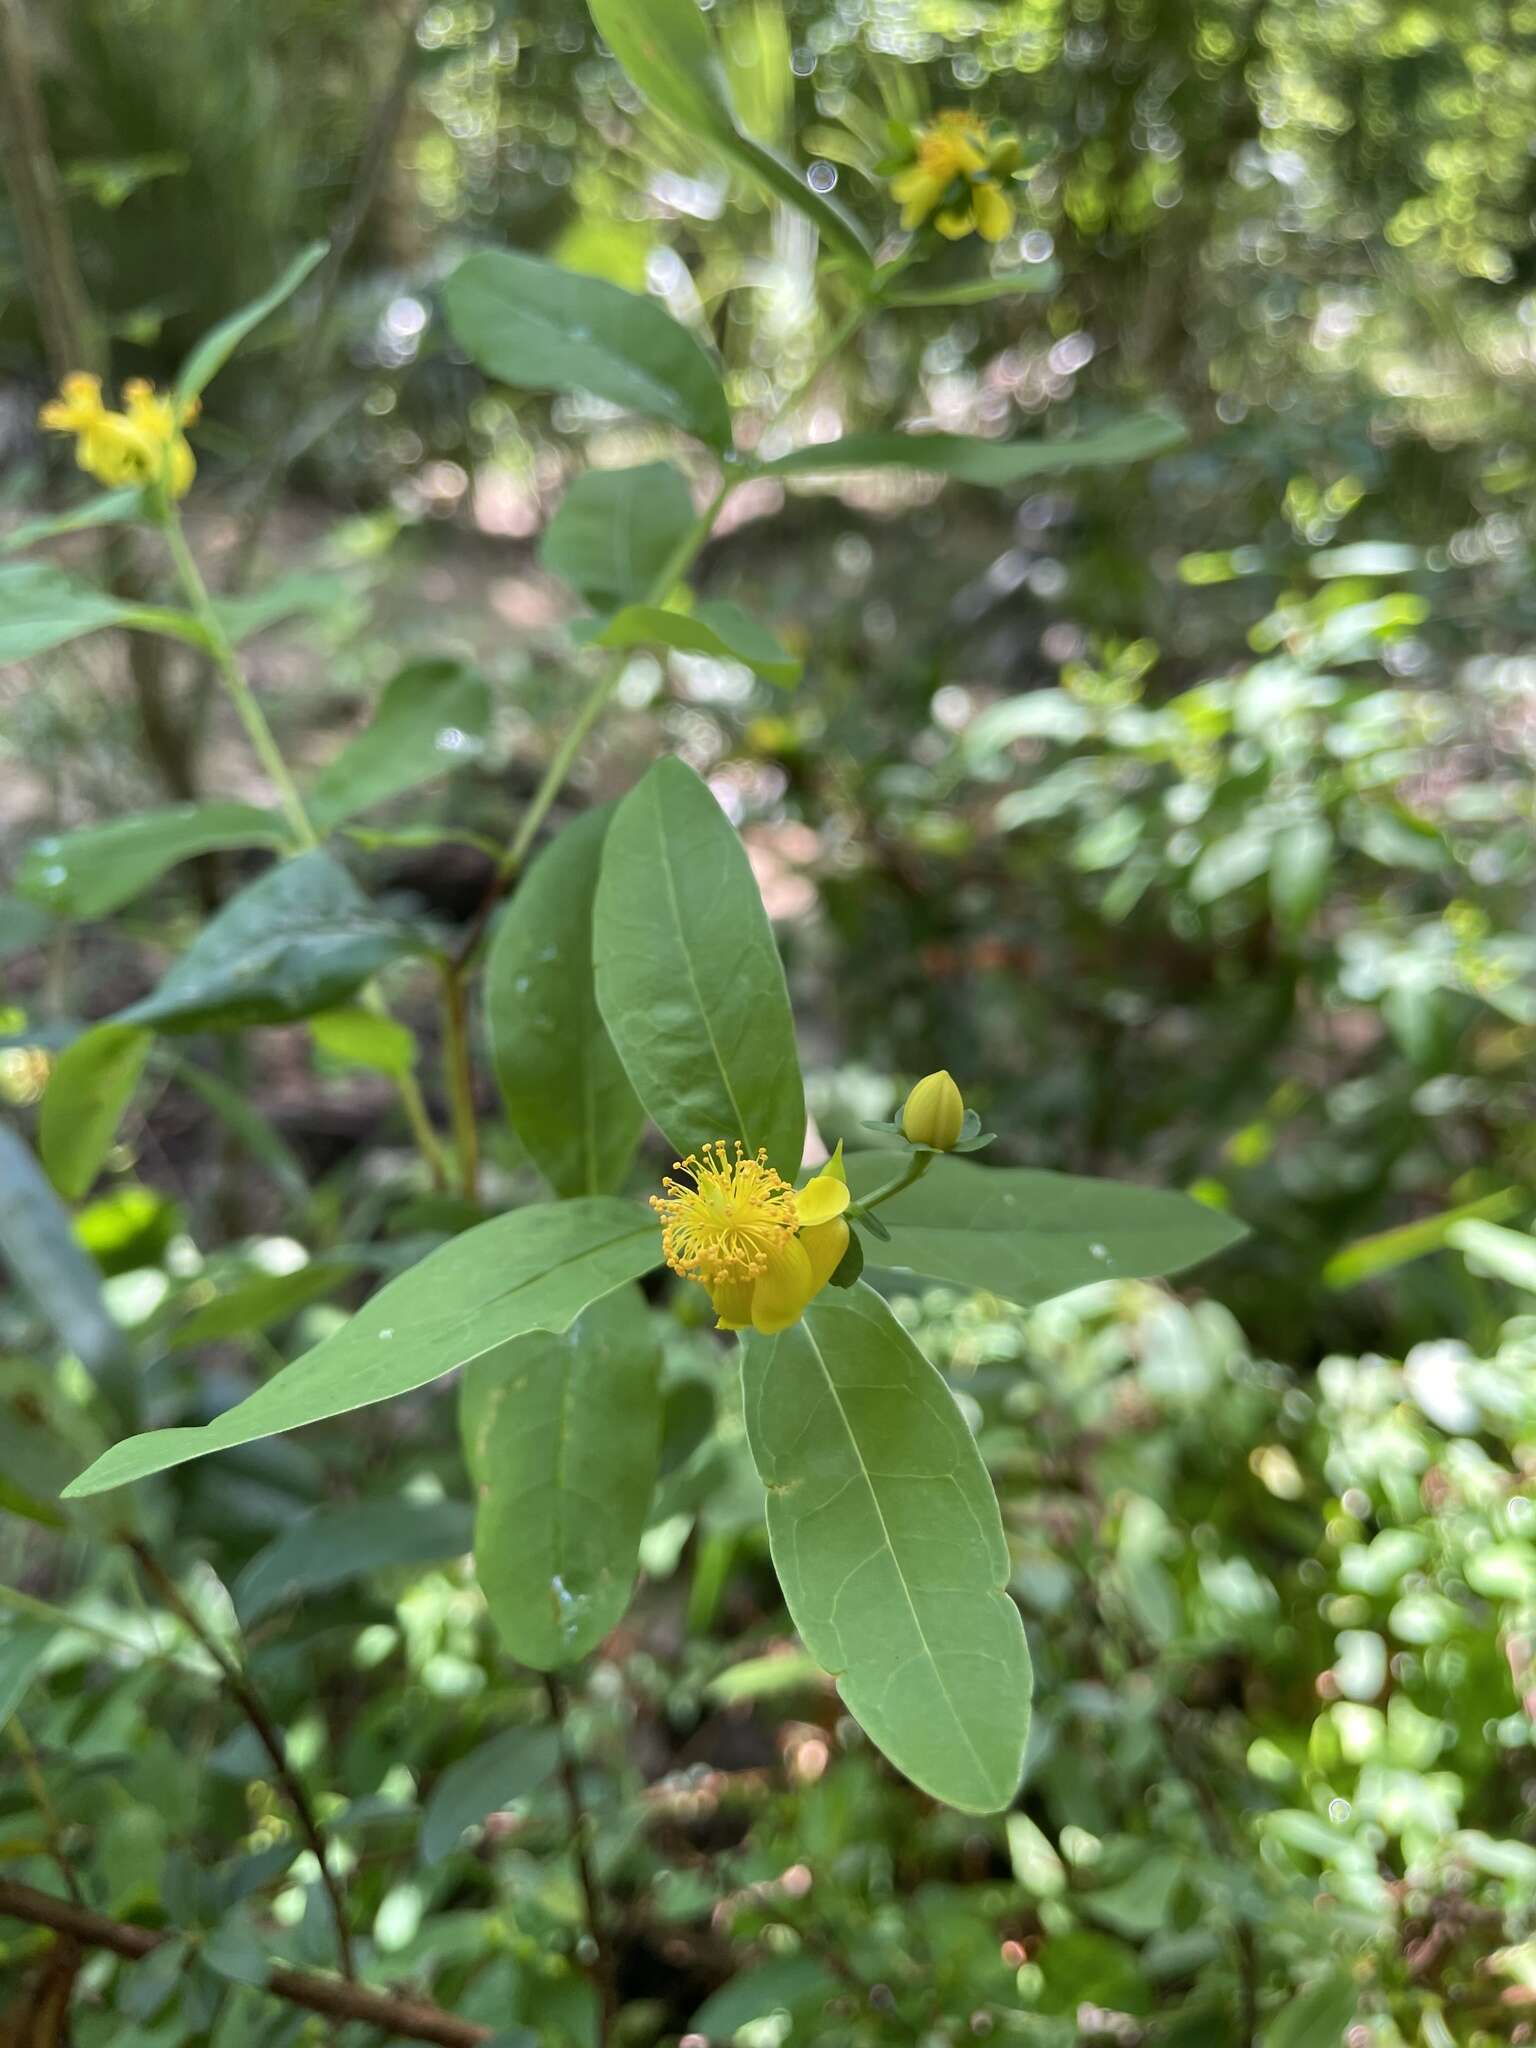 Sivun Hypericum apocynifolium Small kuva